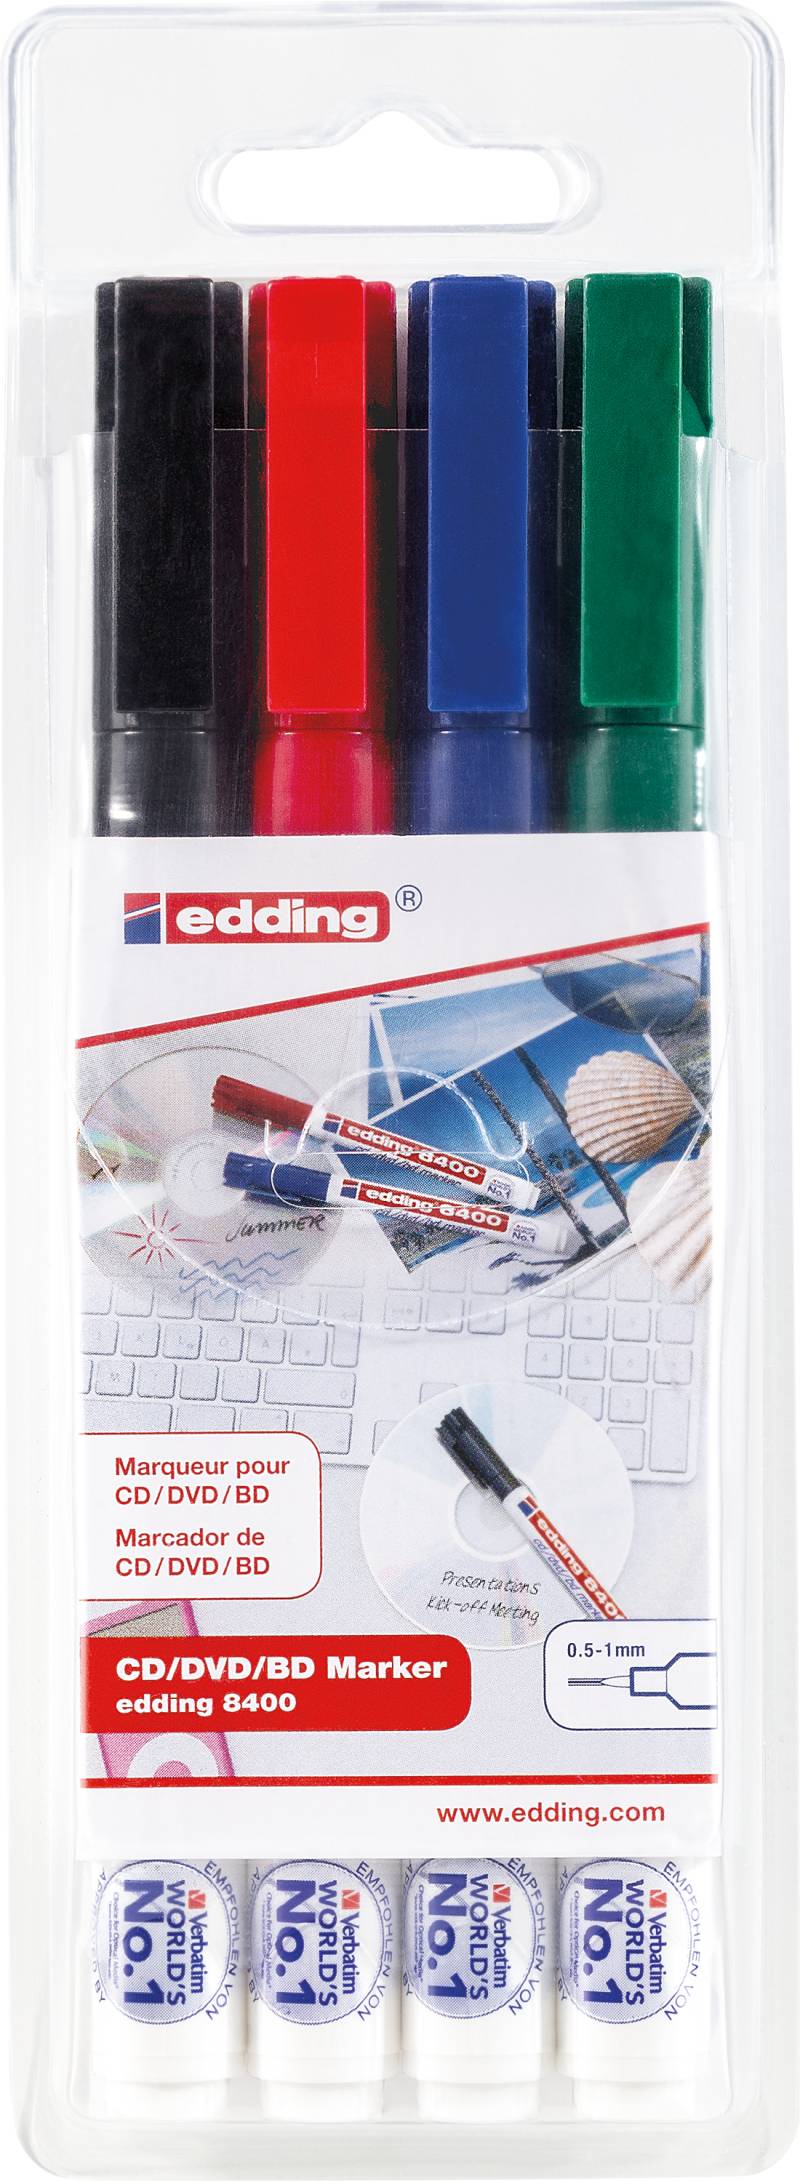 EDDING 8400/4S - CD-Marker, 4-farbig sortiert, 0,5 - 1,0mm von Edding